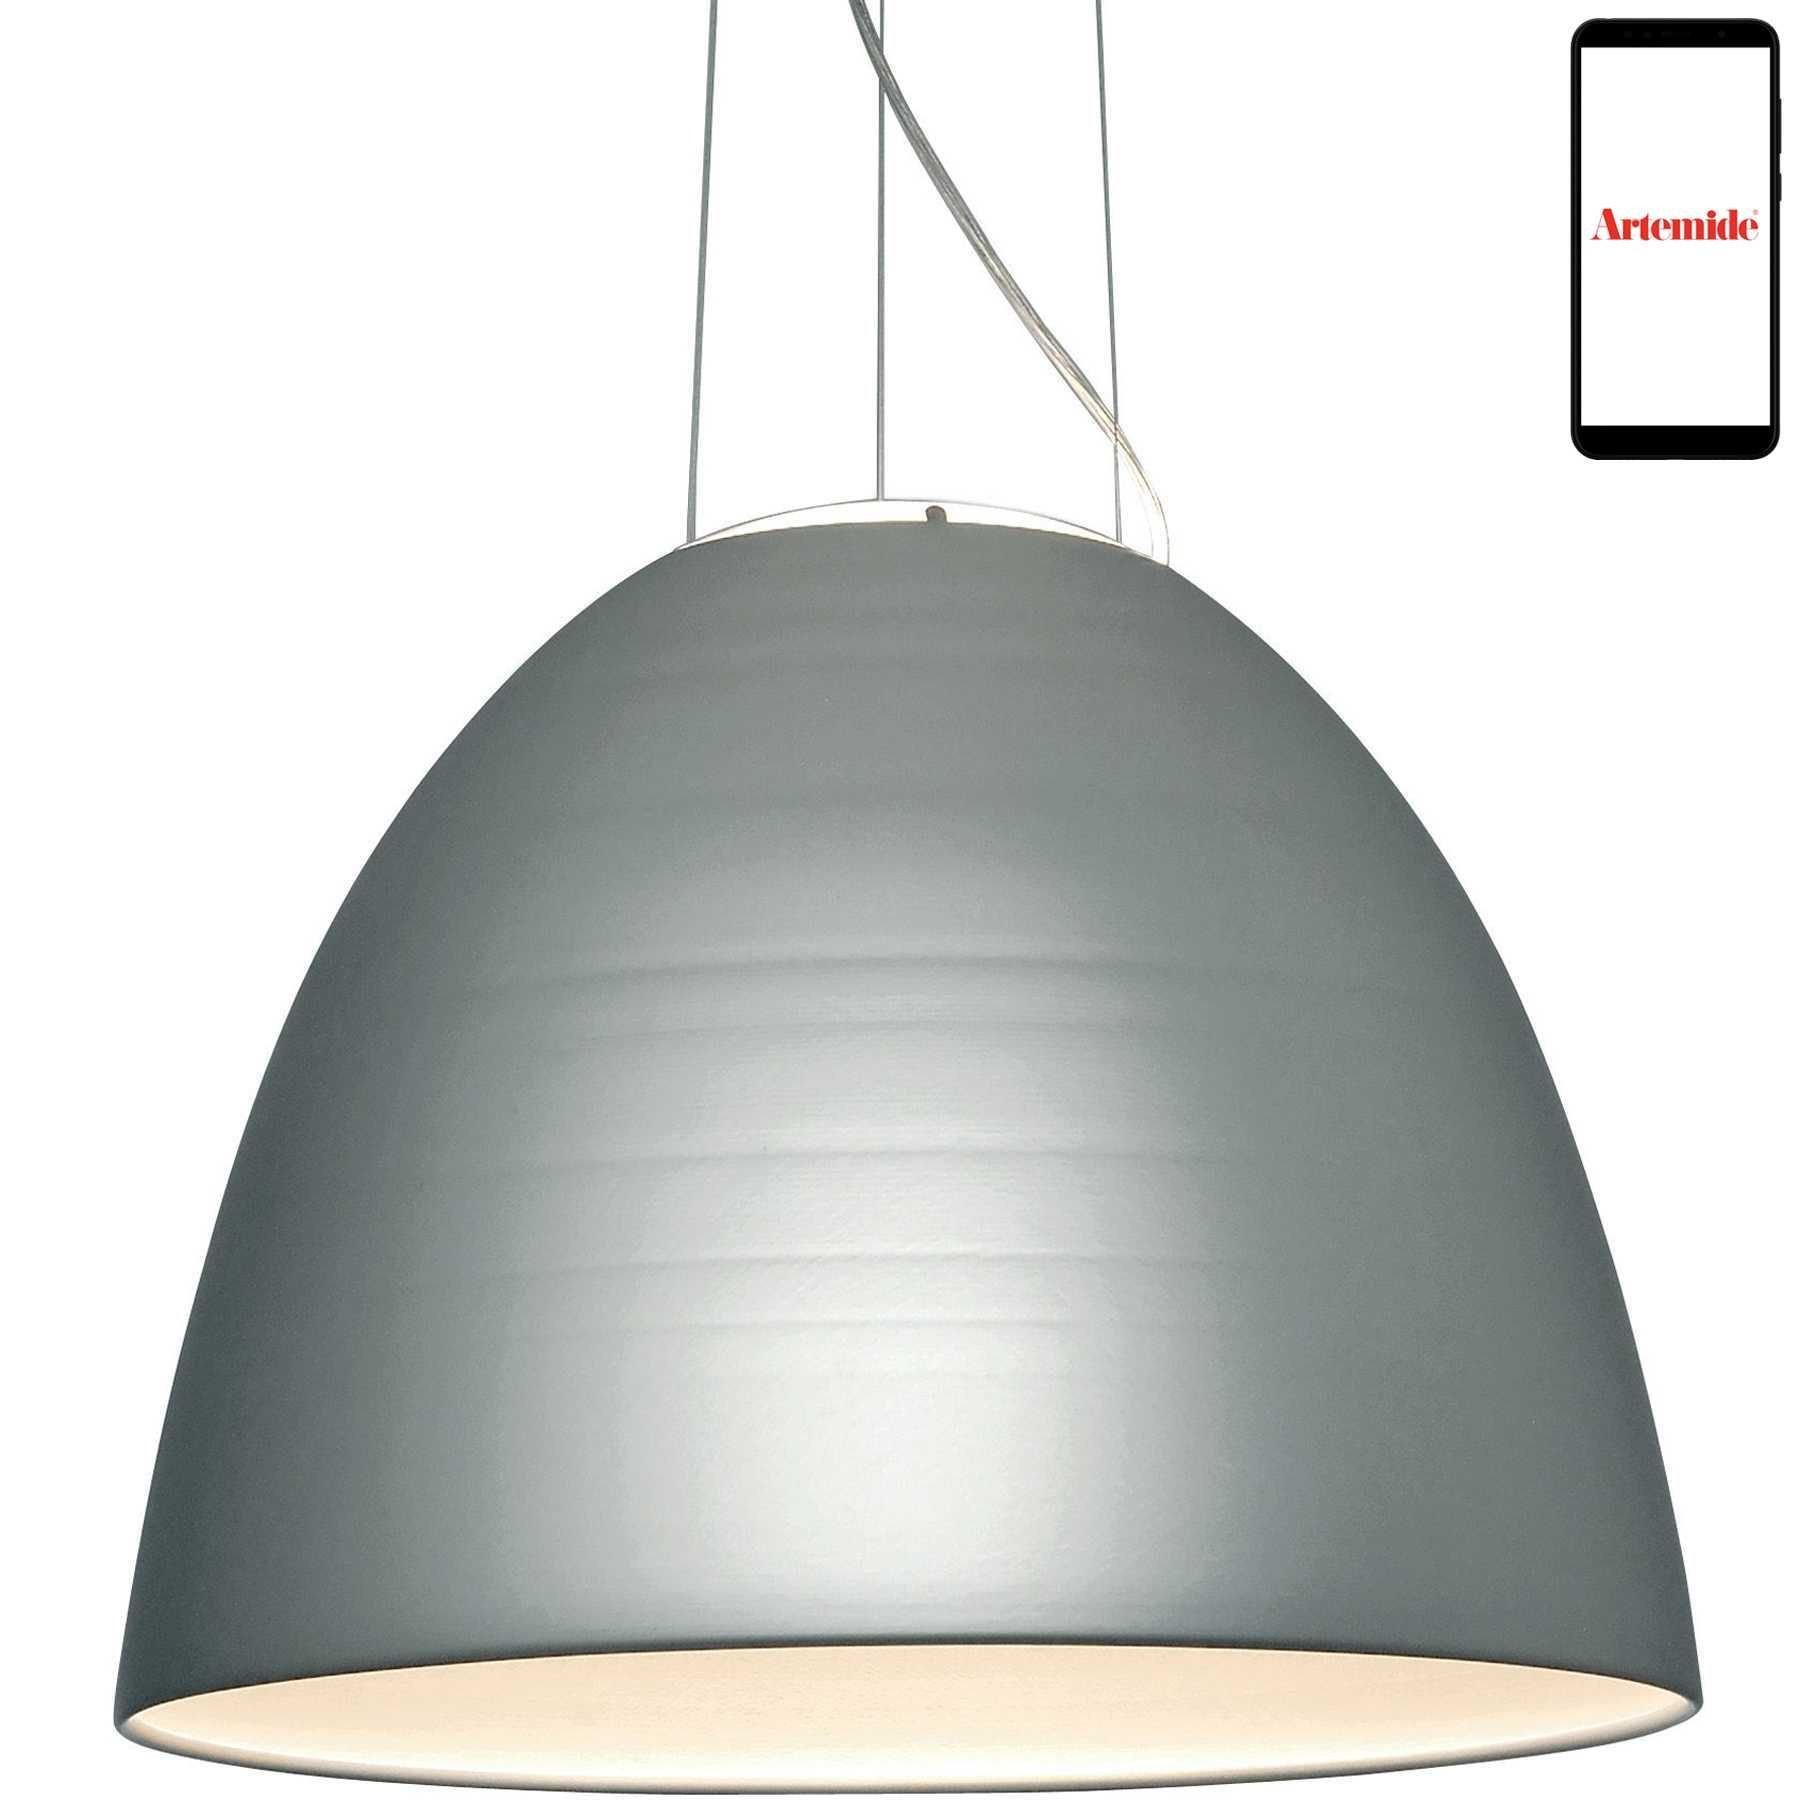 Beeldhouwer capaciteit driehoek Artemide Nur hanglamp LED dimbaar via smartphone mat aluminium | Flinders